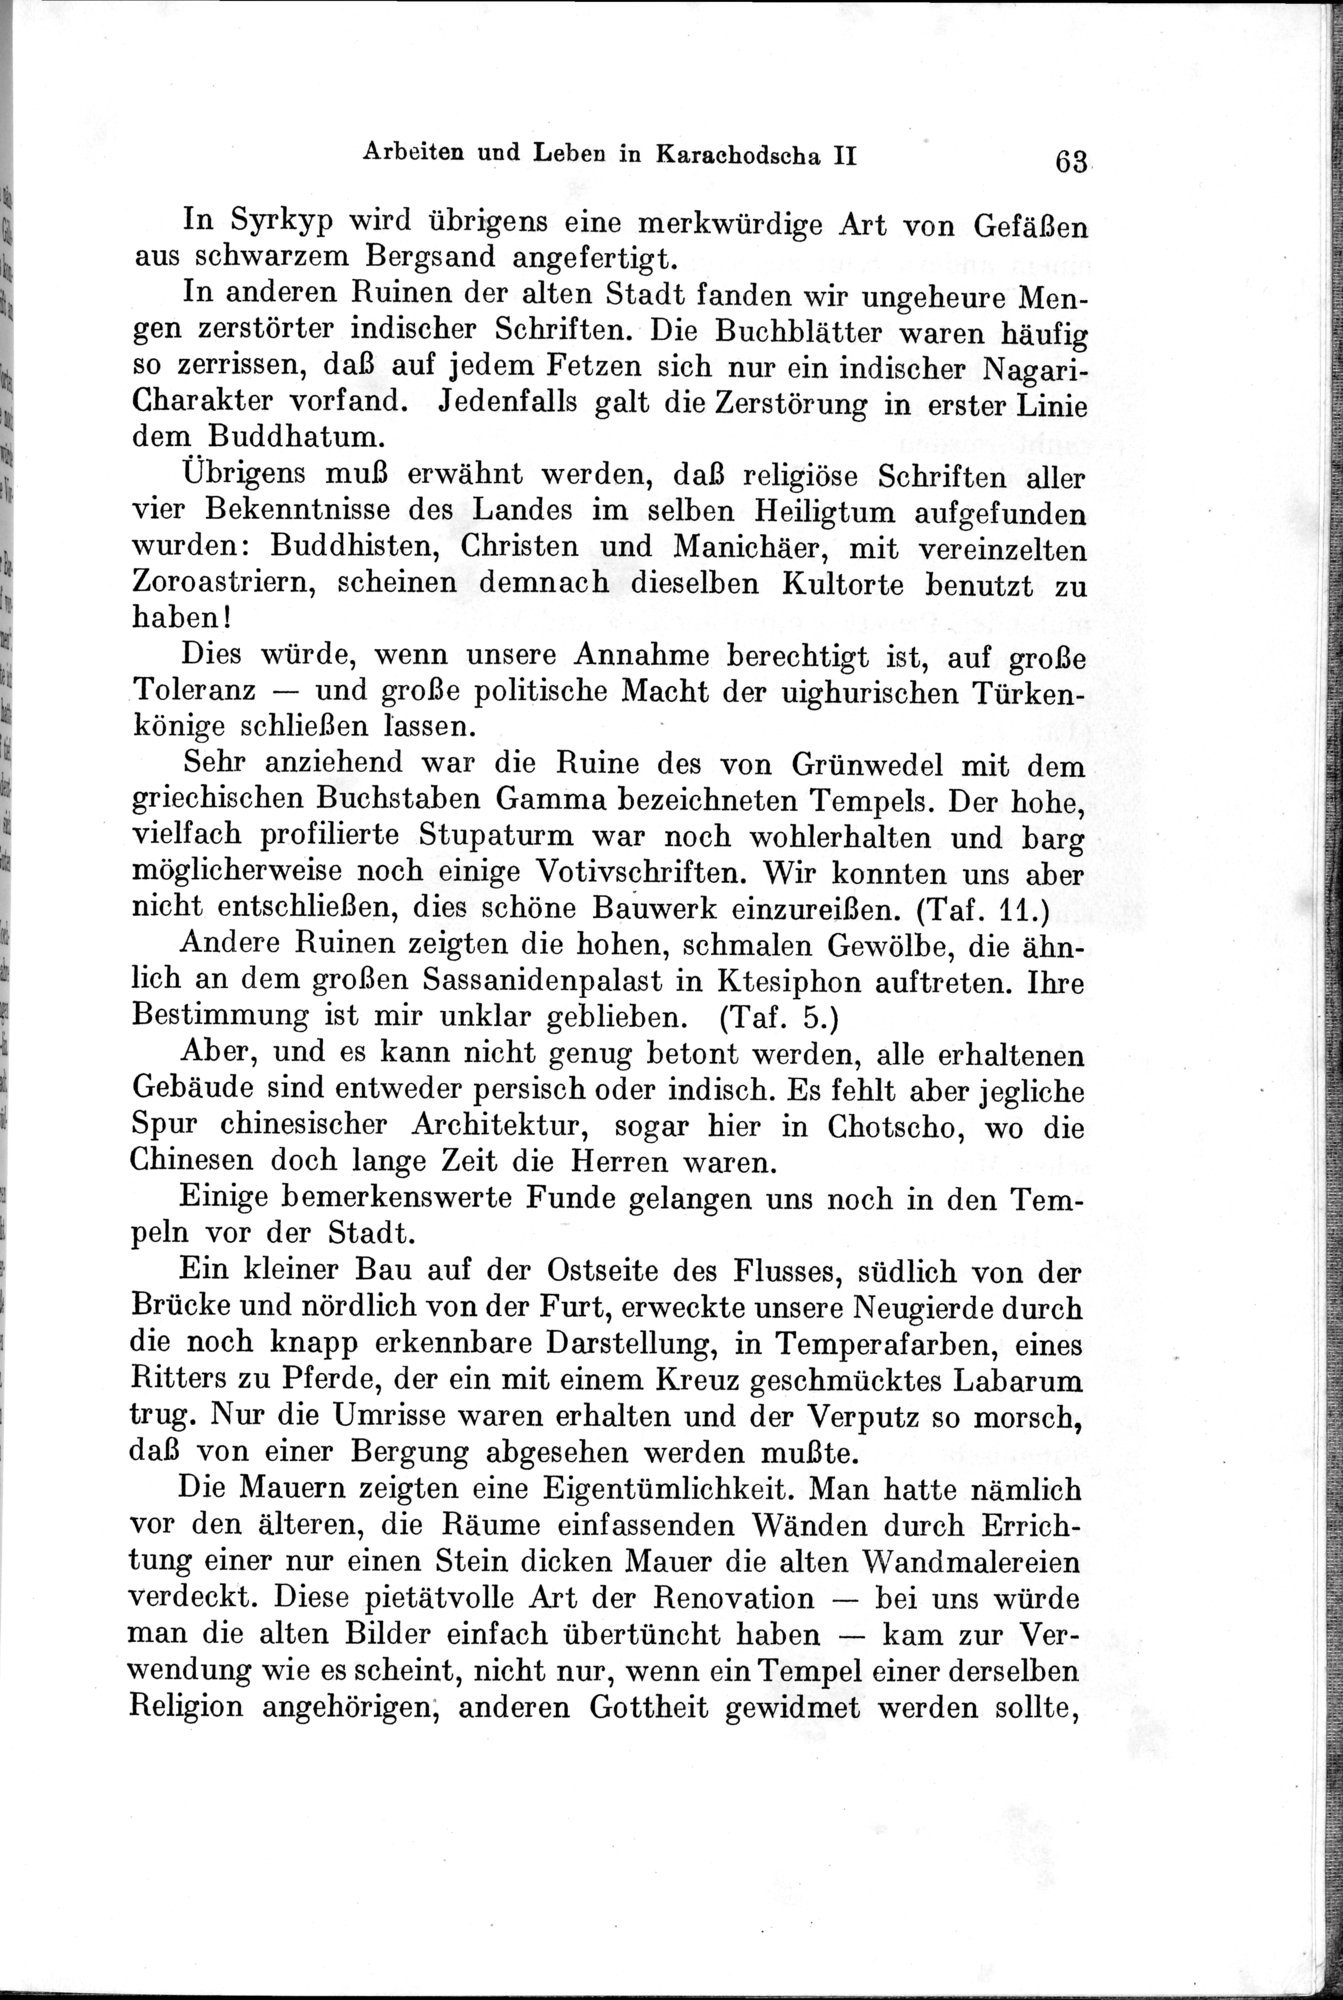 Auf Hellas Spuren in Ostturkistan : vol.1 / Page 95 (Grayscale High Resolution Image)